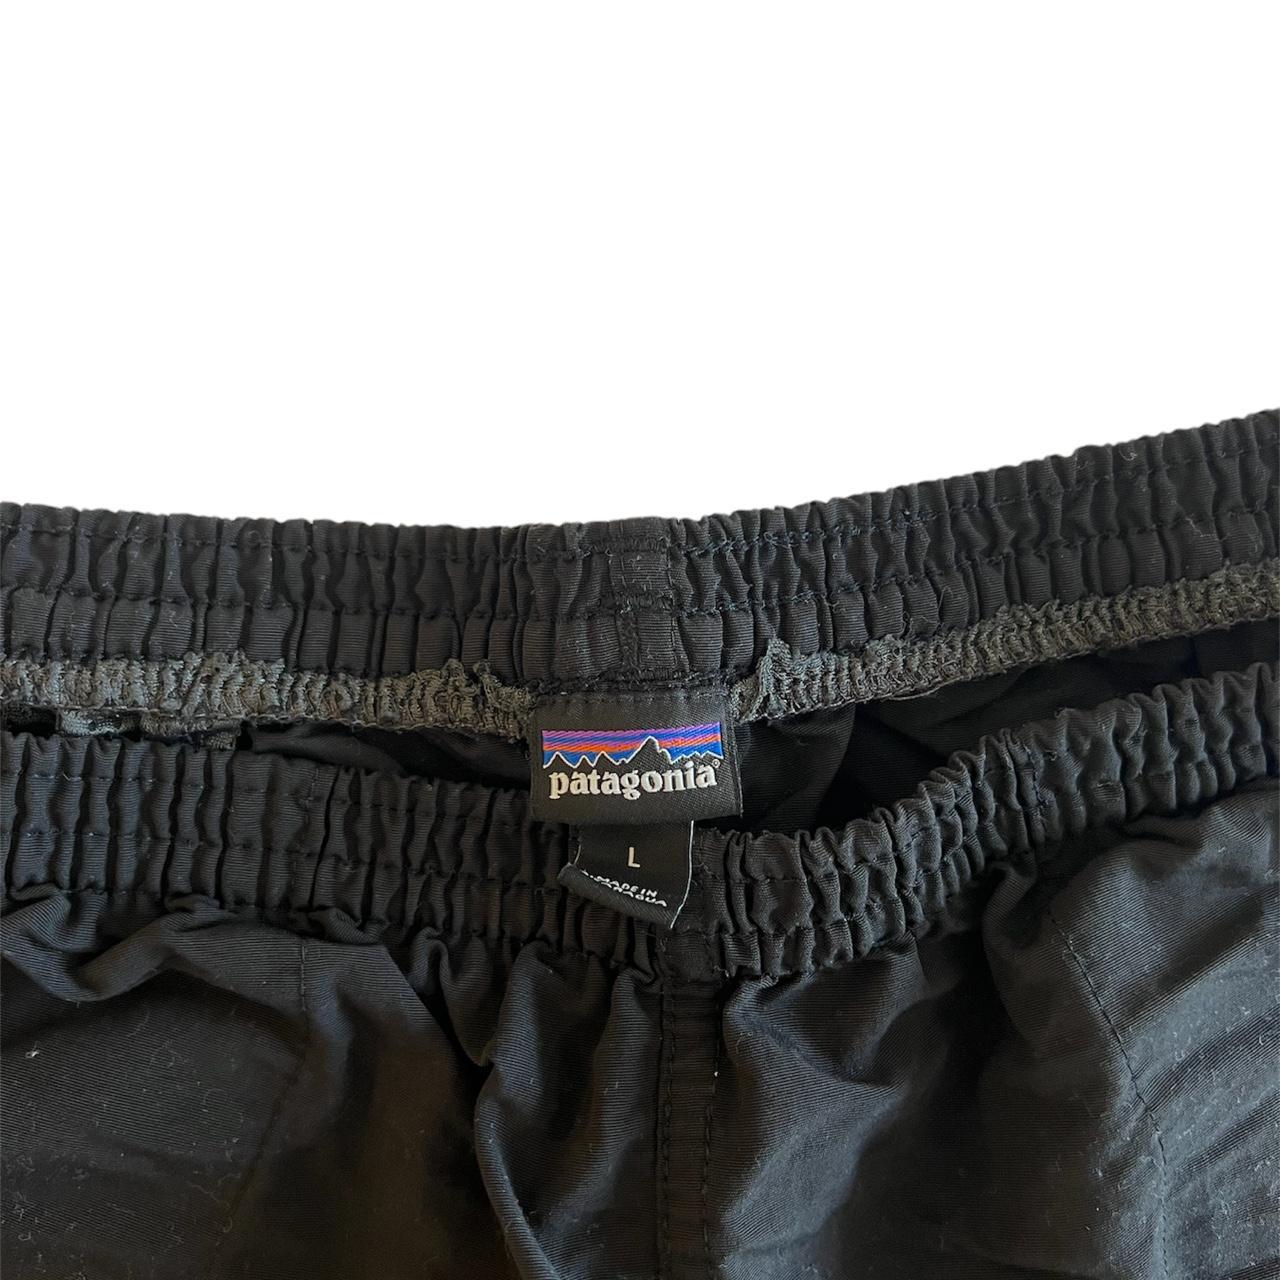 Patagonia Black Baggies 5 in. Shorts. Size: Large.... - Depop